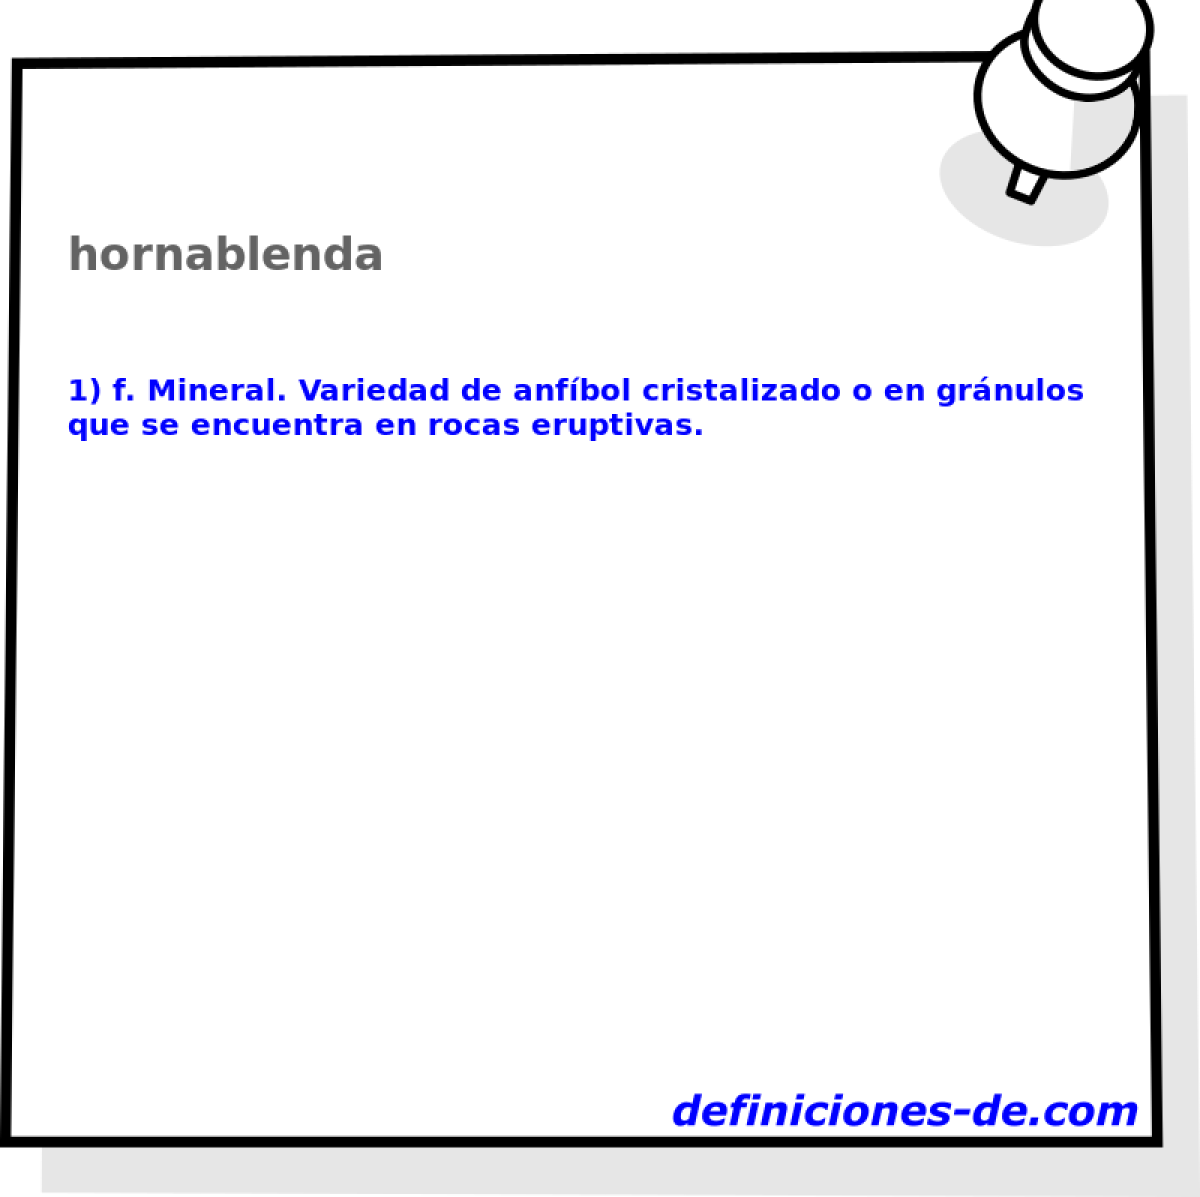 hornablenda 